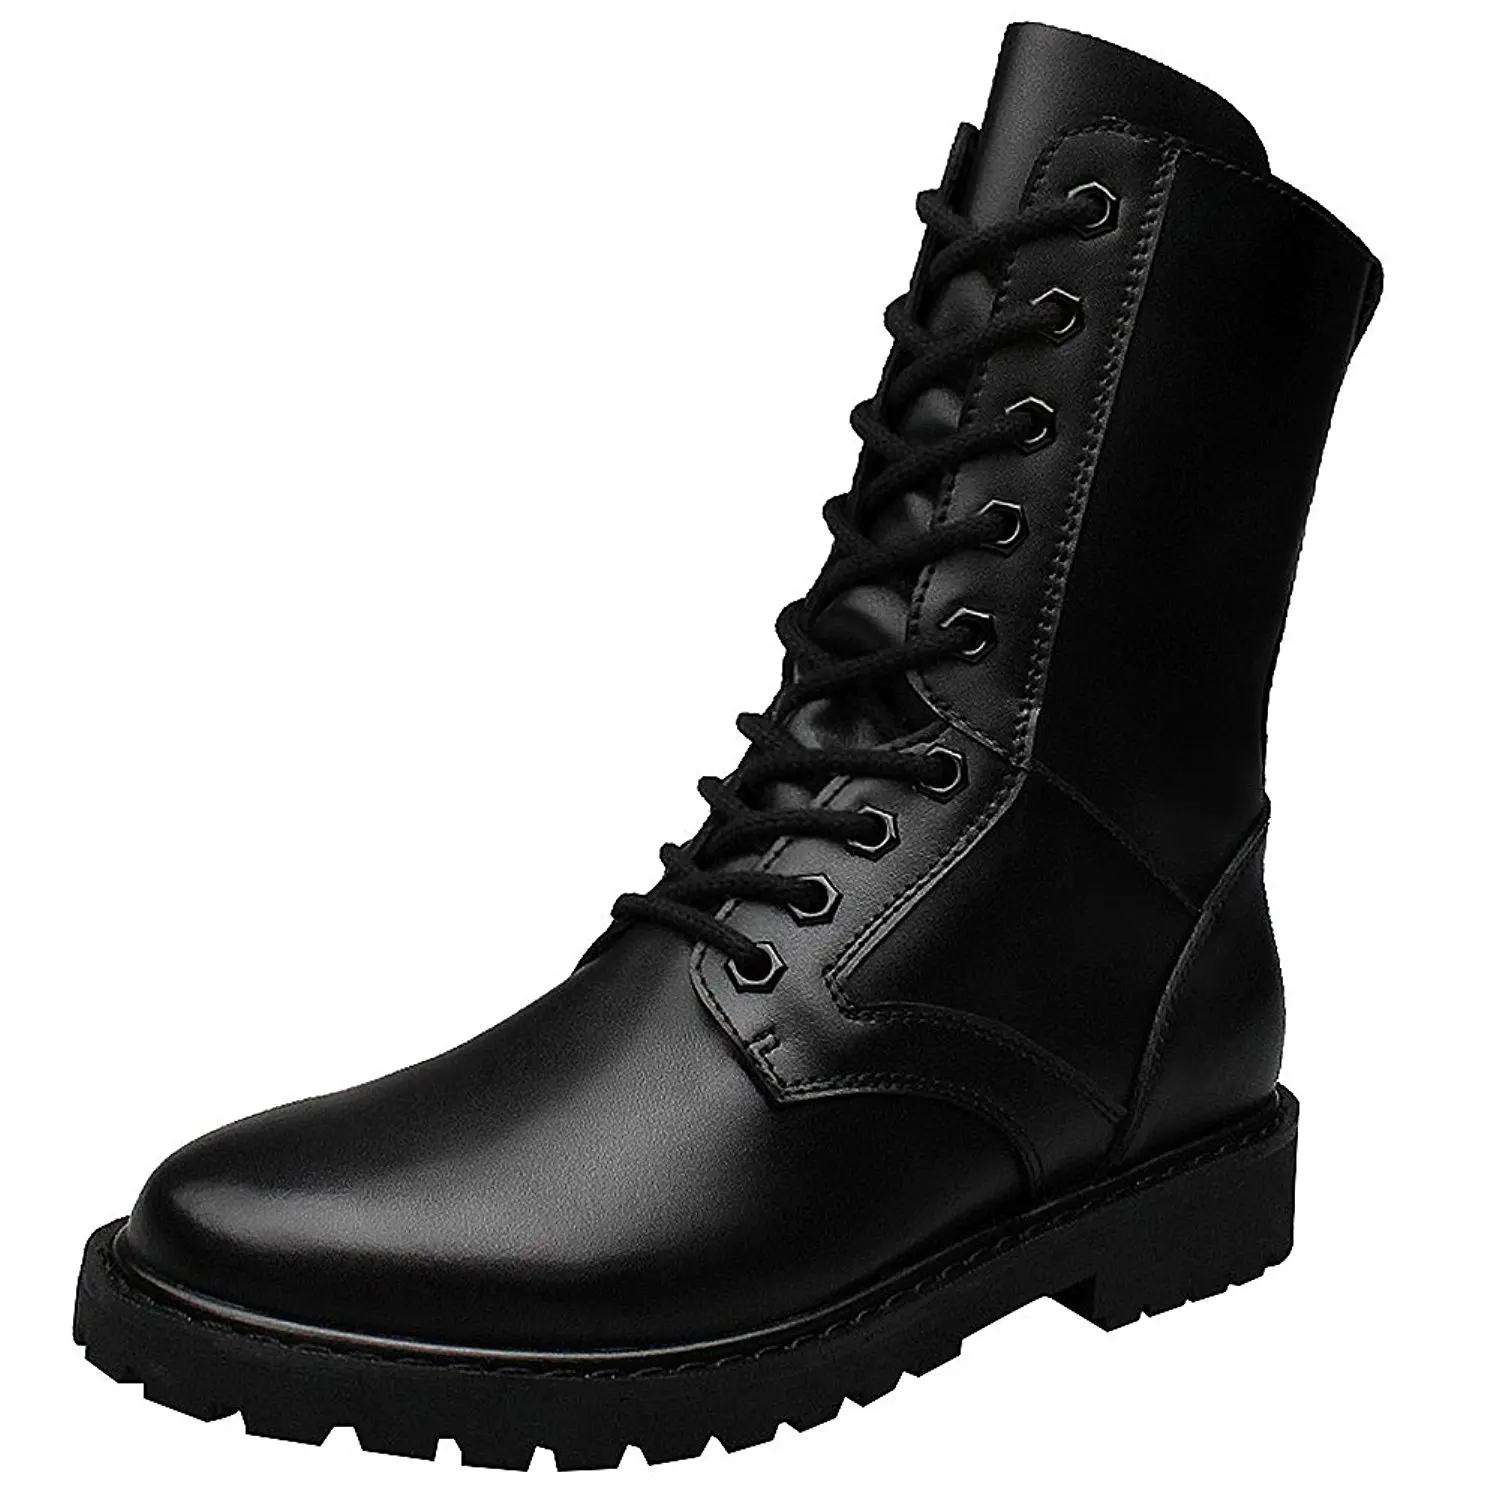 Cheap Black Mid Calf Combat Boots, find Black Mid Calf Combat Boots